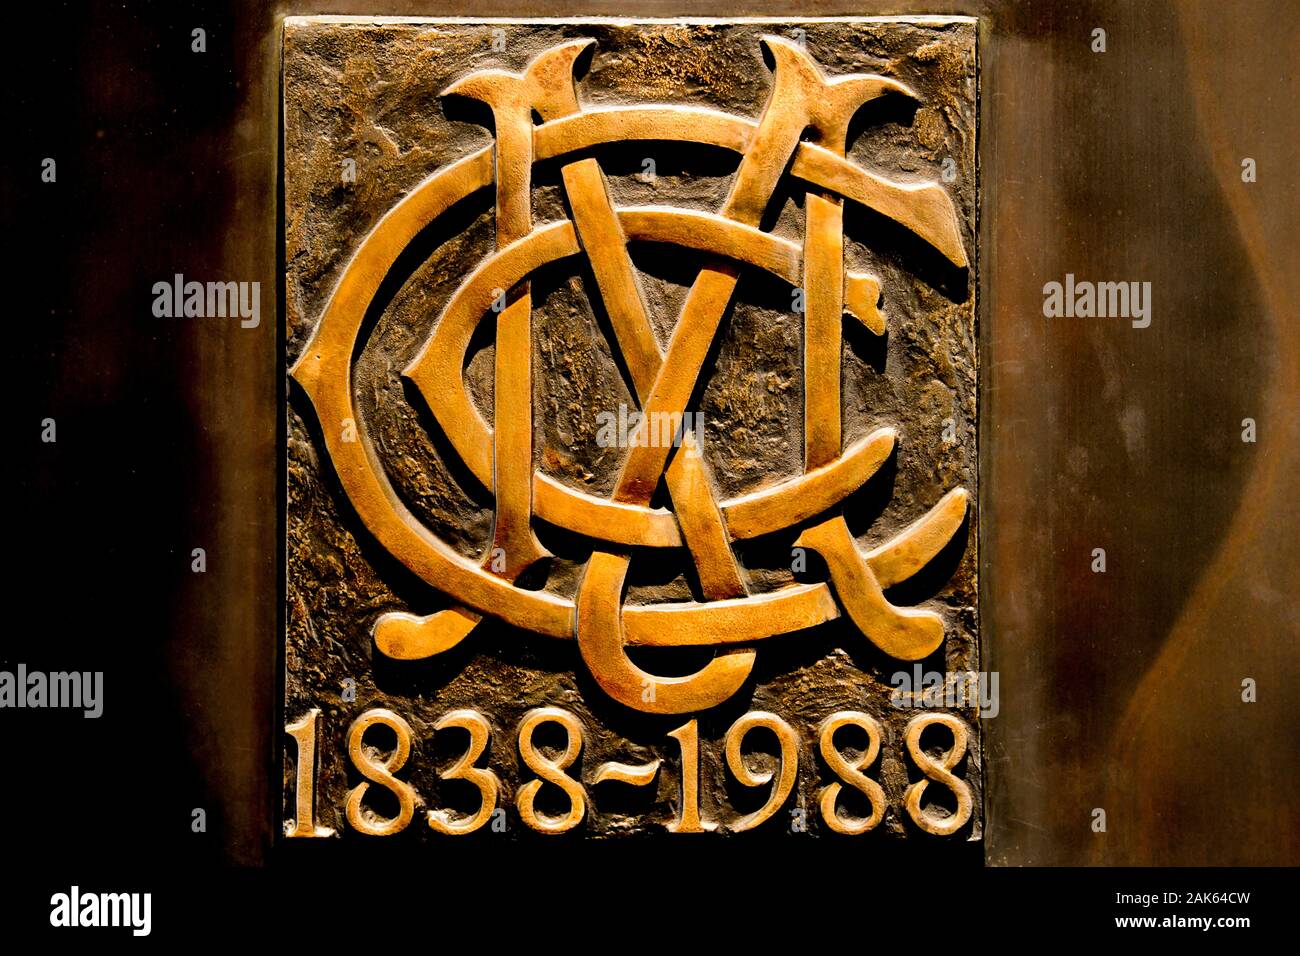 MCC Melbourne Cricket Club insegne sul centocinquantesimo 1838-1988 commemorative porte di bronzo a MCG - Melbourne Cricket Ground Foto Stock